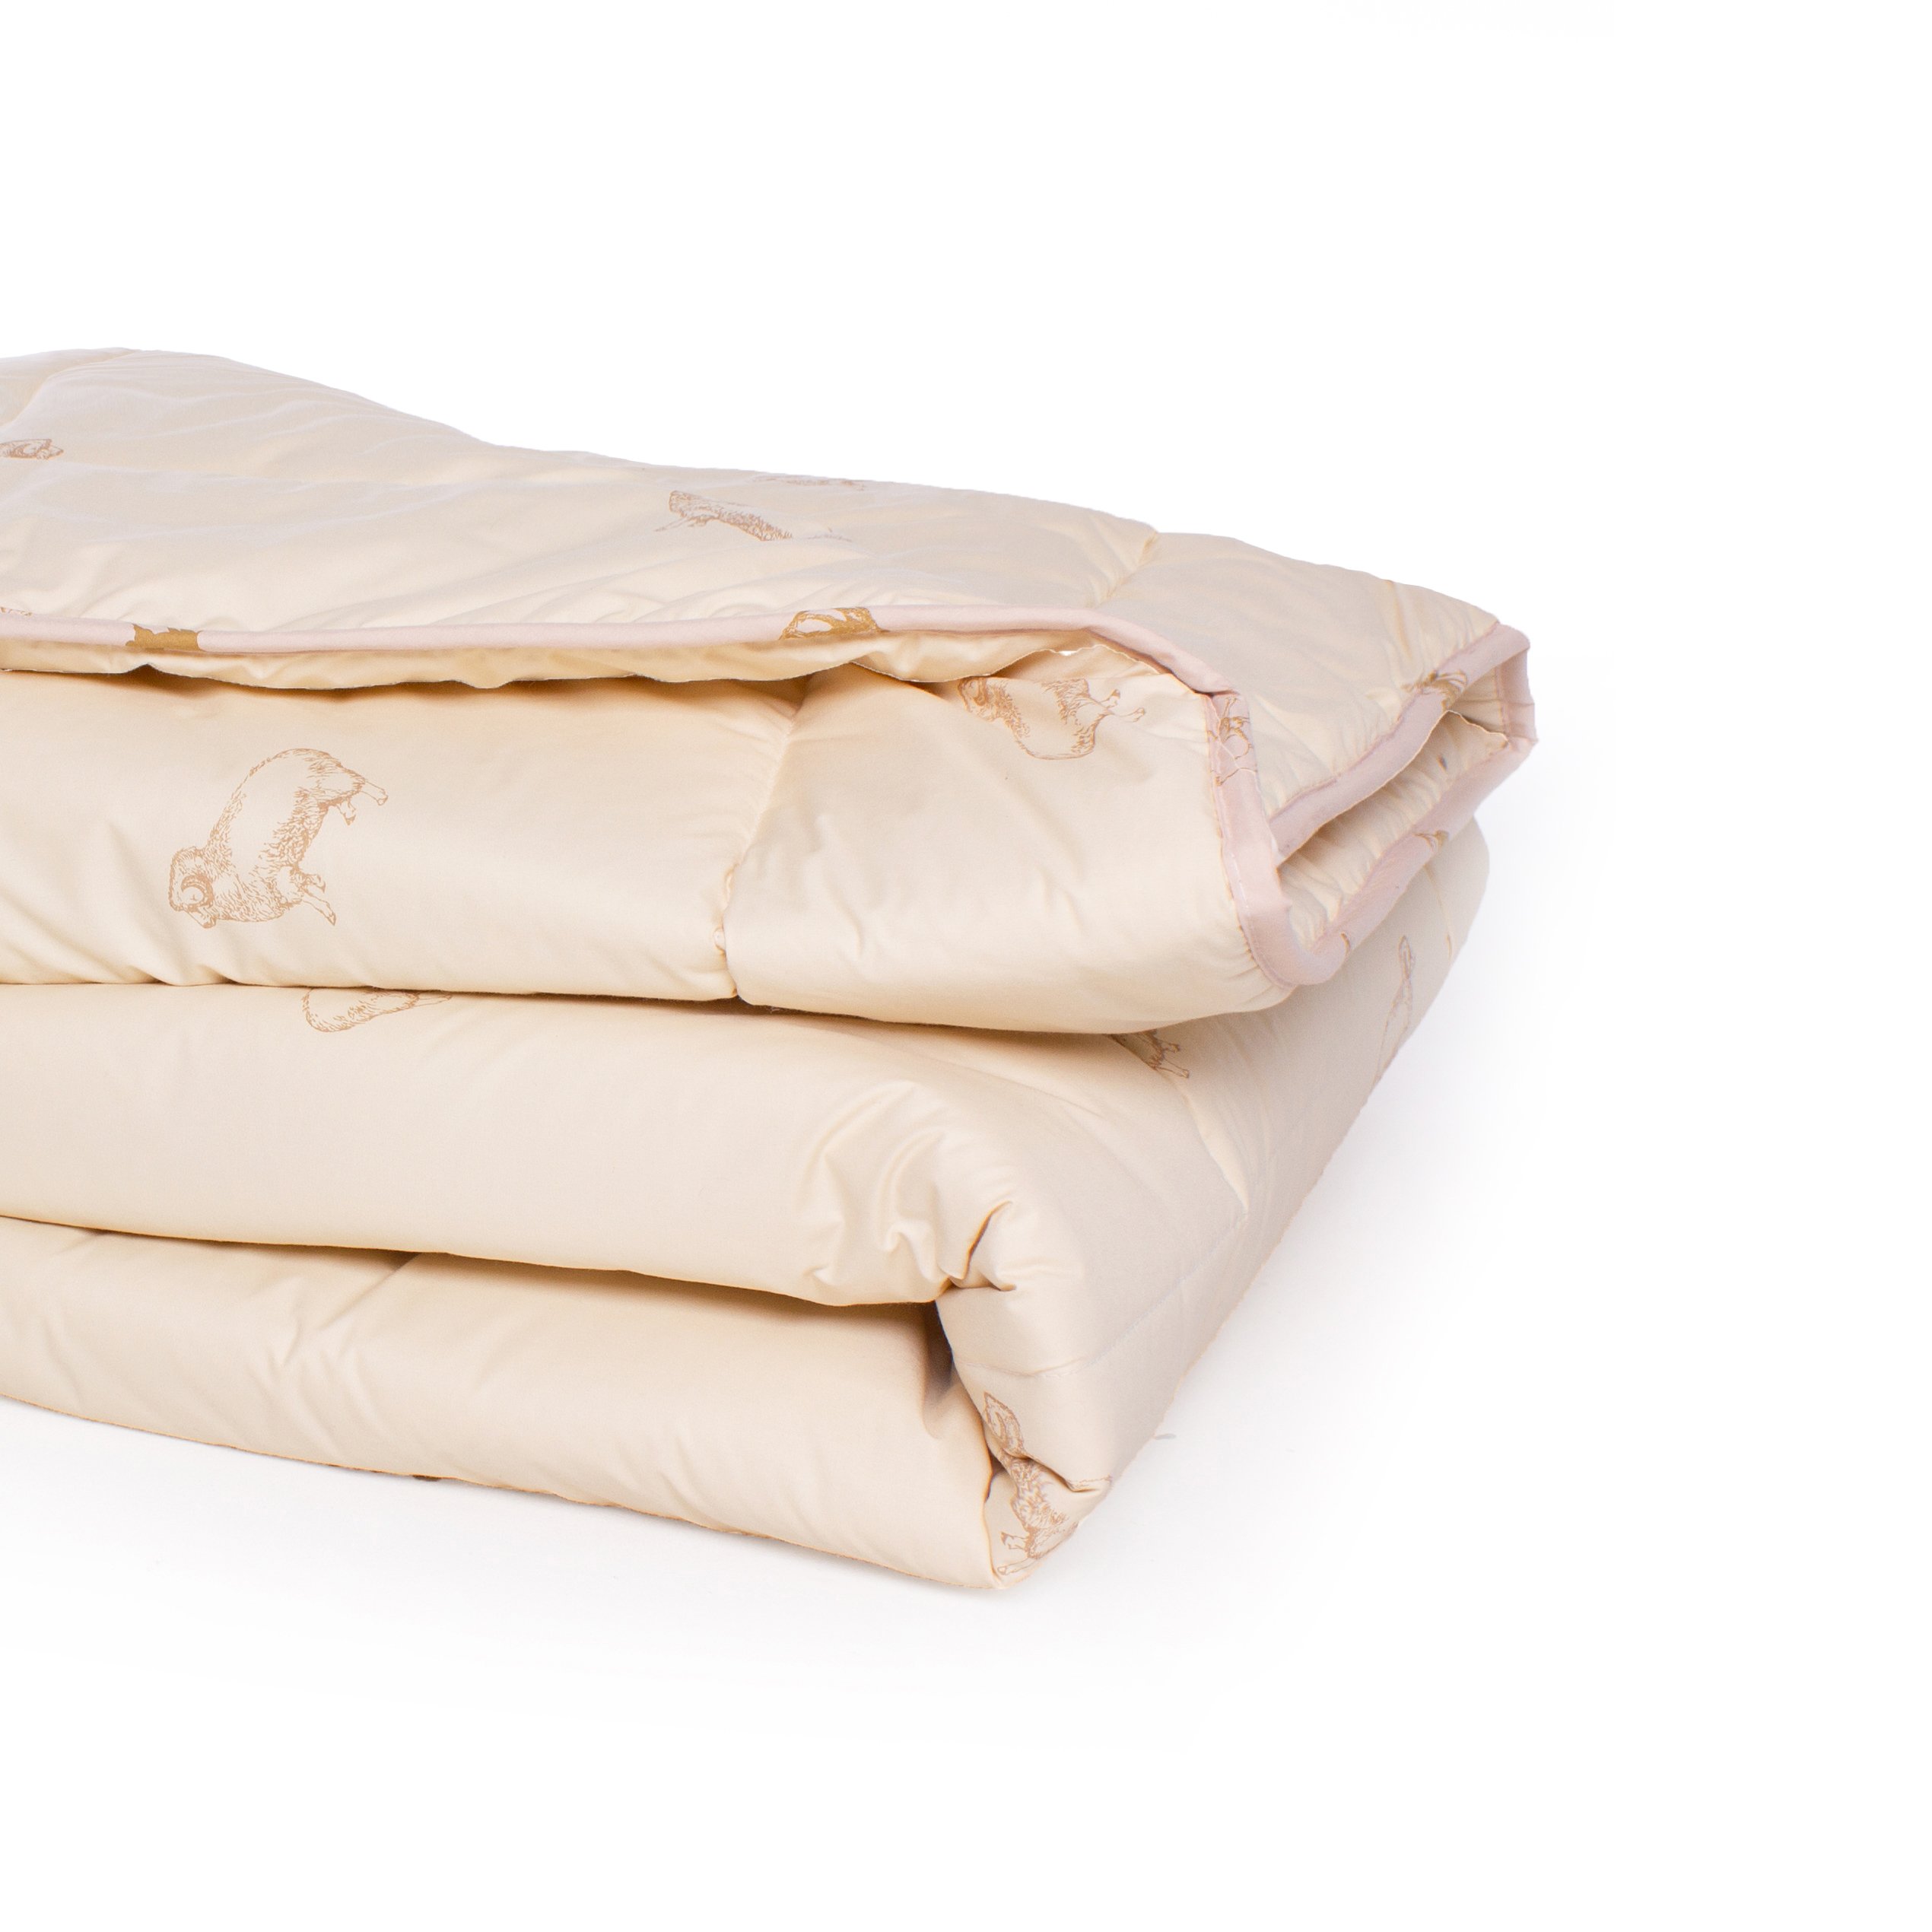 Одеяло шерстяное MirSon Gold Camel №024, зимнее, 220x240 см, кремовое - фото 3